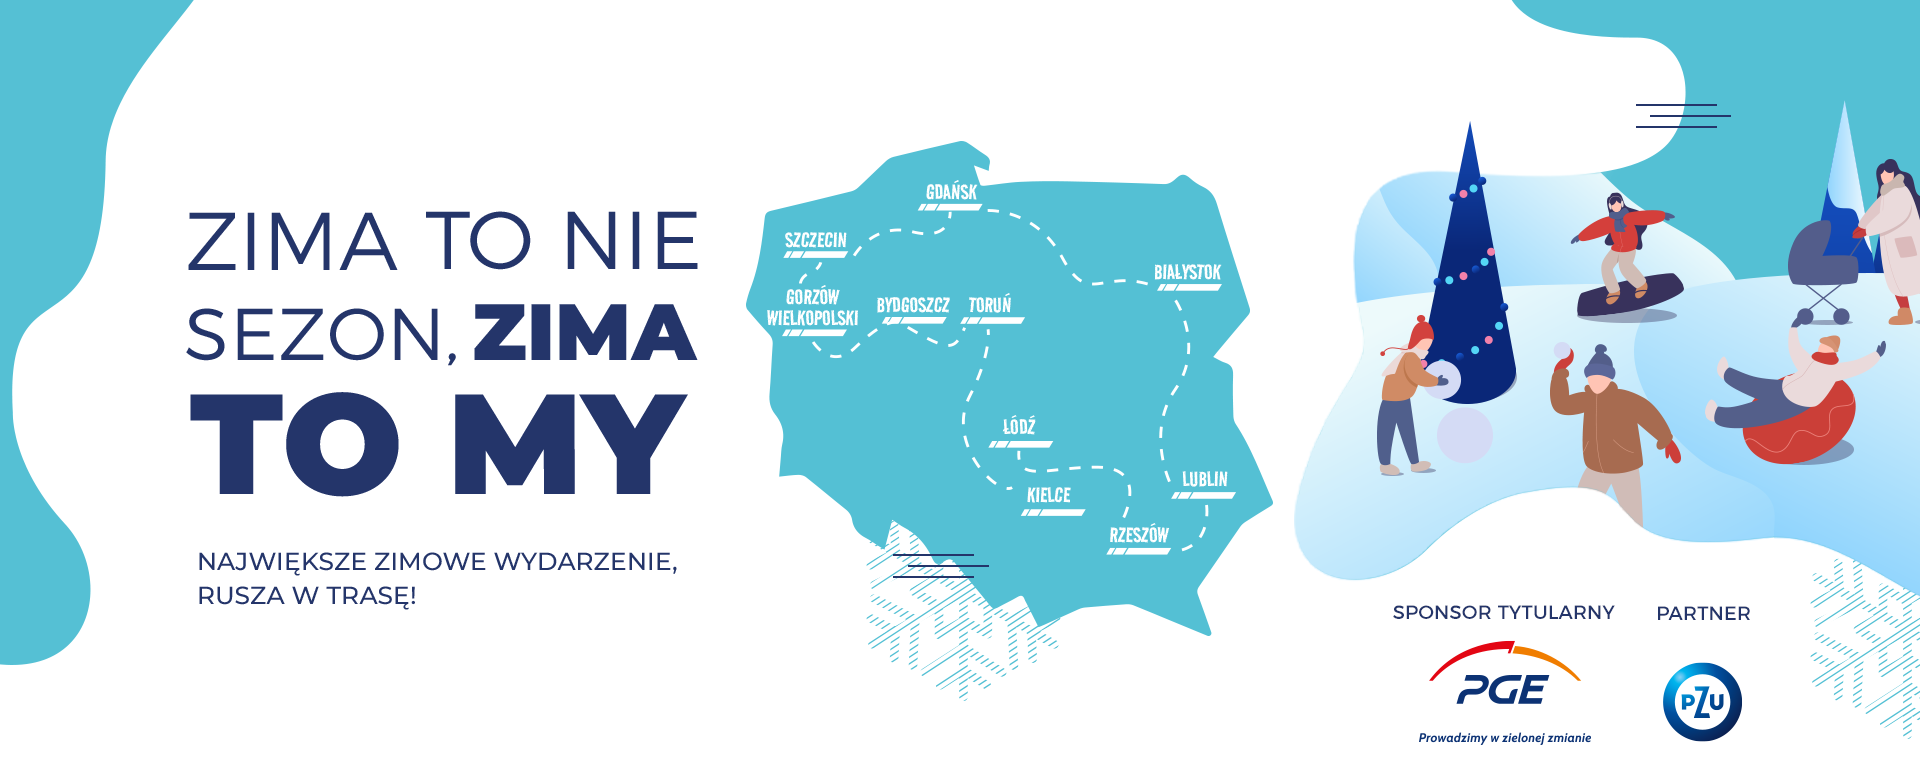 W najbliższy weekend „Zimowy Narodowy” zawita do Lublina